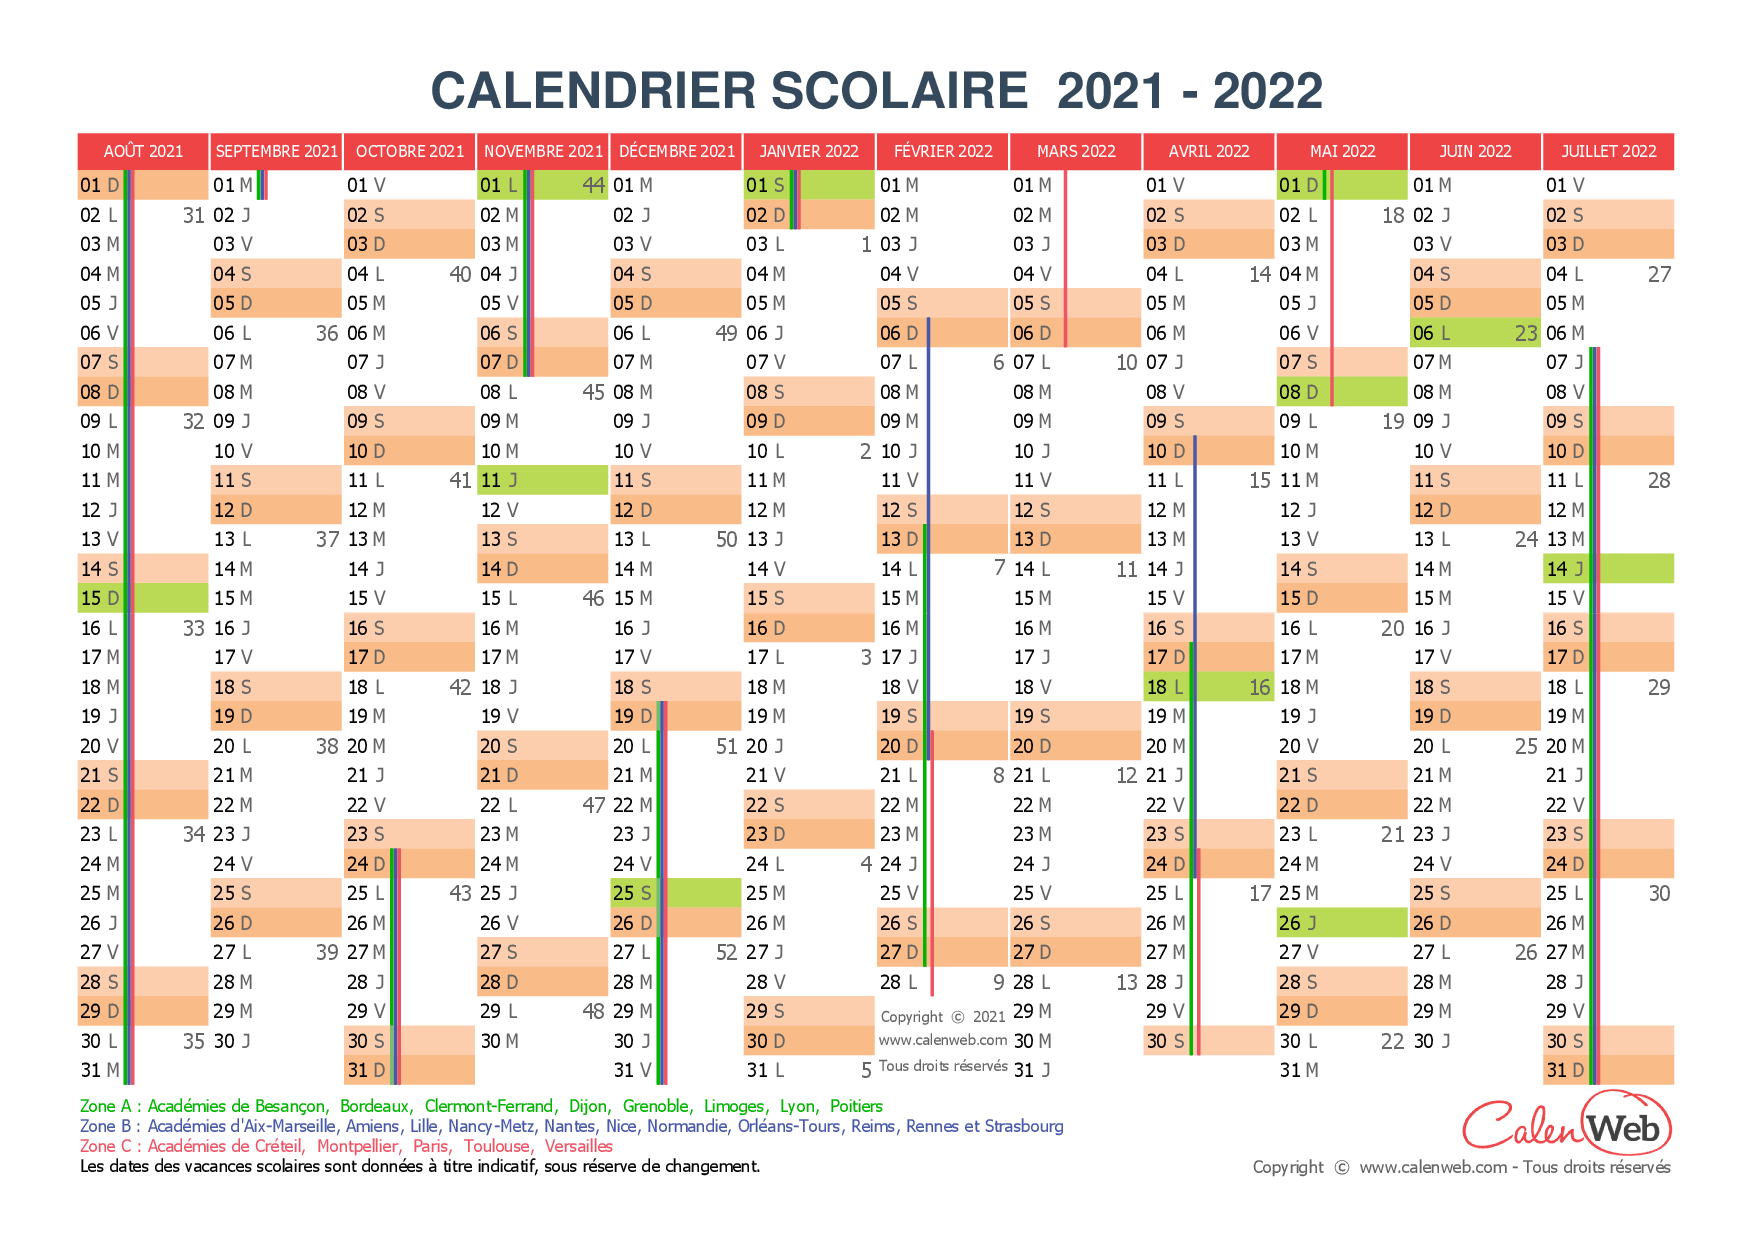 Calendrier Jour Fériés 2022 Calendrier scolaire annuel 2021 2022 avec affichage des jours 